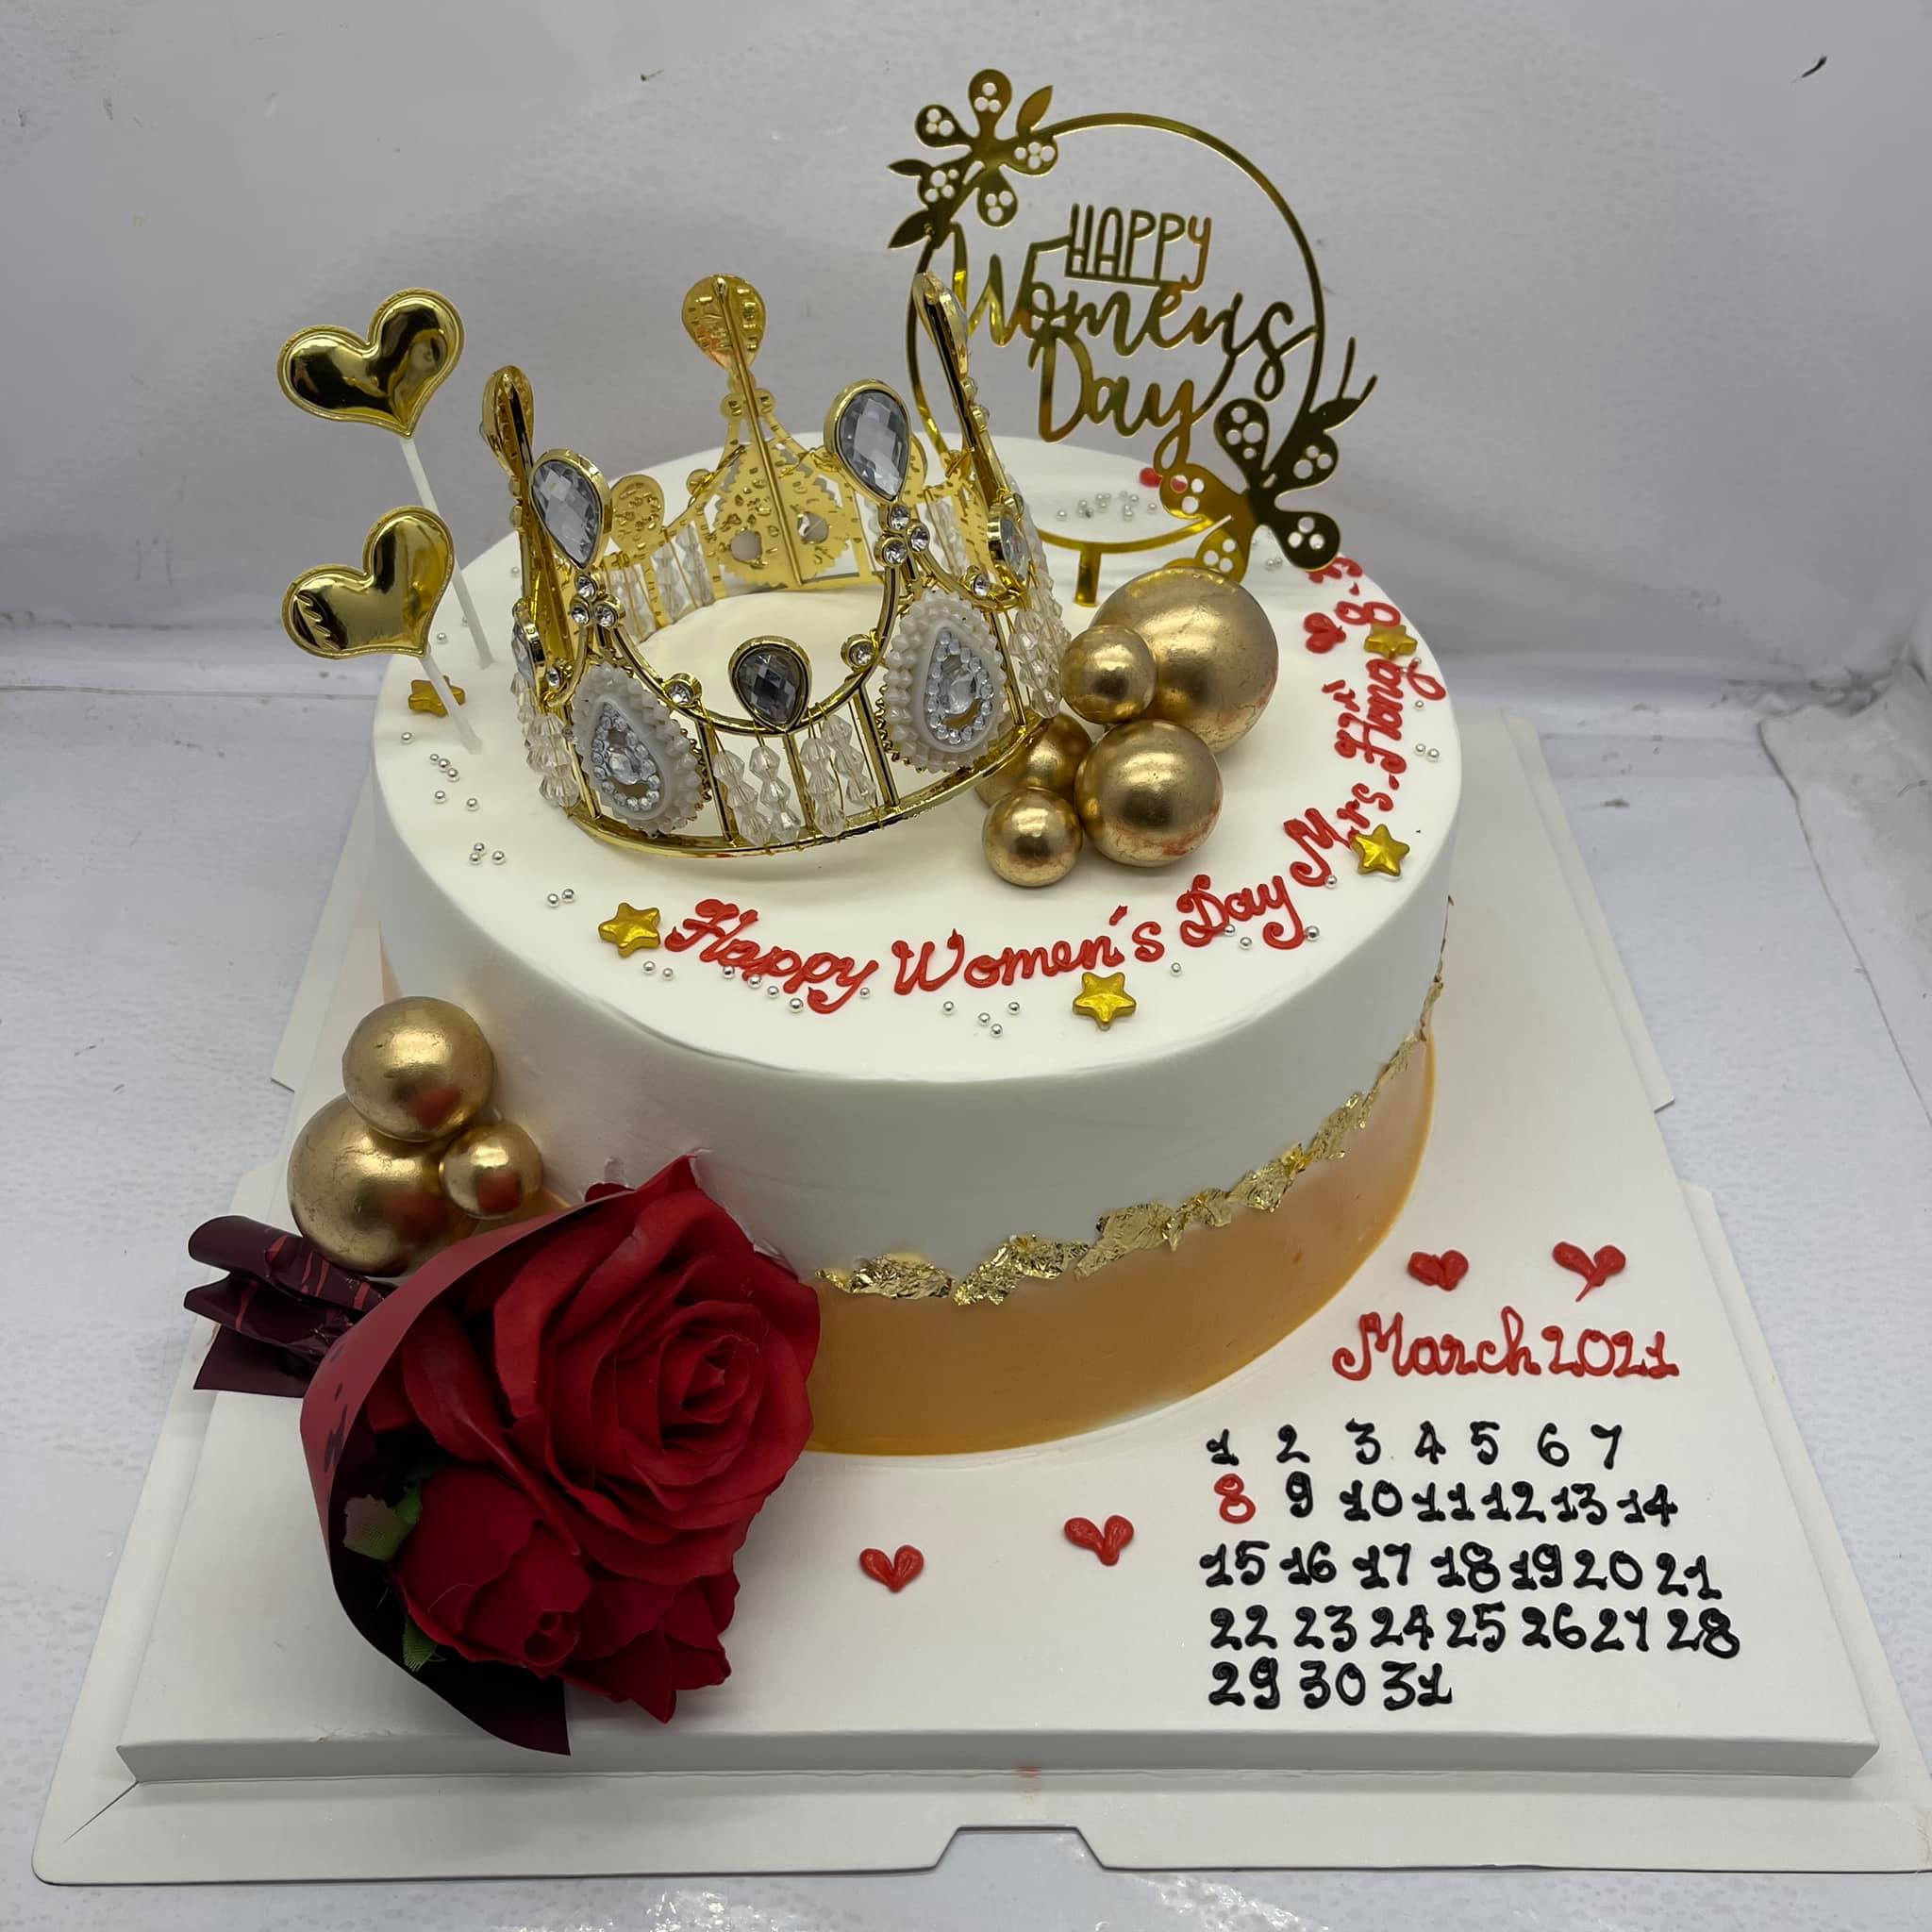 Bánh Sinh Nhật Vương Miện: Chỉ cần nhìn vào chiếc bánh sinh nhật vương miện, bạn sẽ cảm thấy ngay sự sang trọng và hoàng gia. Với lớp kem tươi mịn màng và chiếc vương miện đính trang trí, chiếc bánh này sẽ khiến cho ngày sinh nhật của bạn trở nên hoàn hảo hơn bao giờ hết.